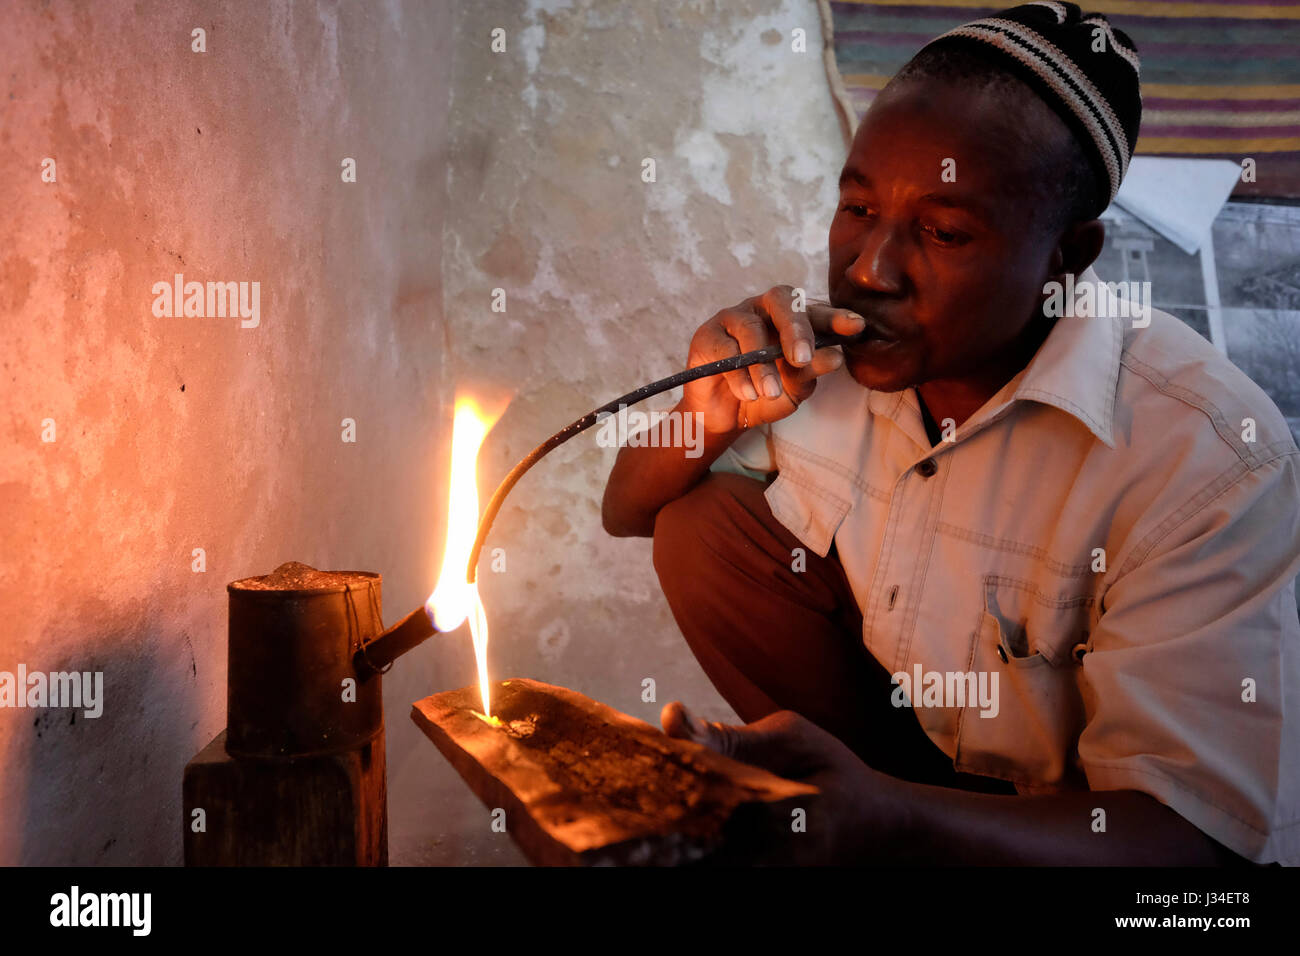 Saidi Saidi Un orfebre local que hace joyas de plata utilizando el proceso tradicional en la isla de Ibo, una de las islas en el archipiélago de Quirimbas en el Océano Índico, frente al norte de Mozambique, África Foto de stock